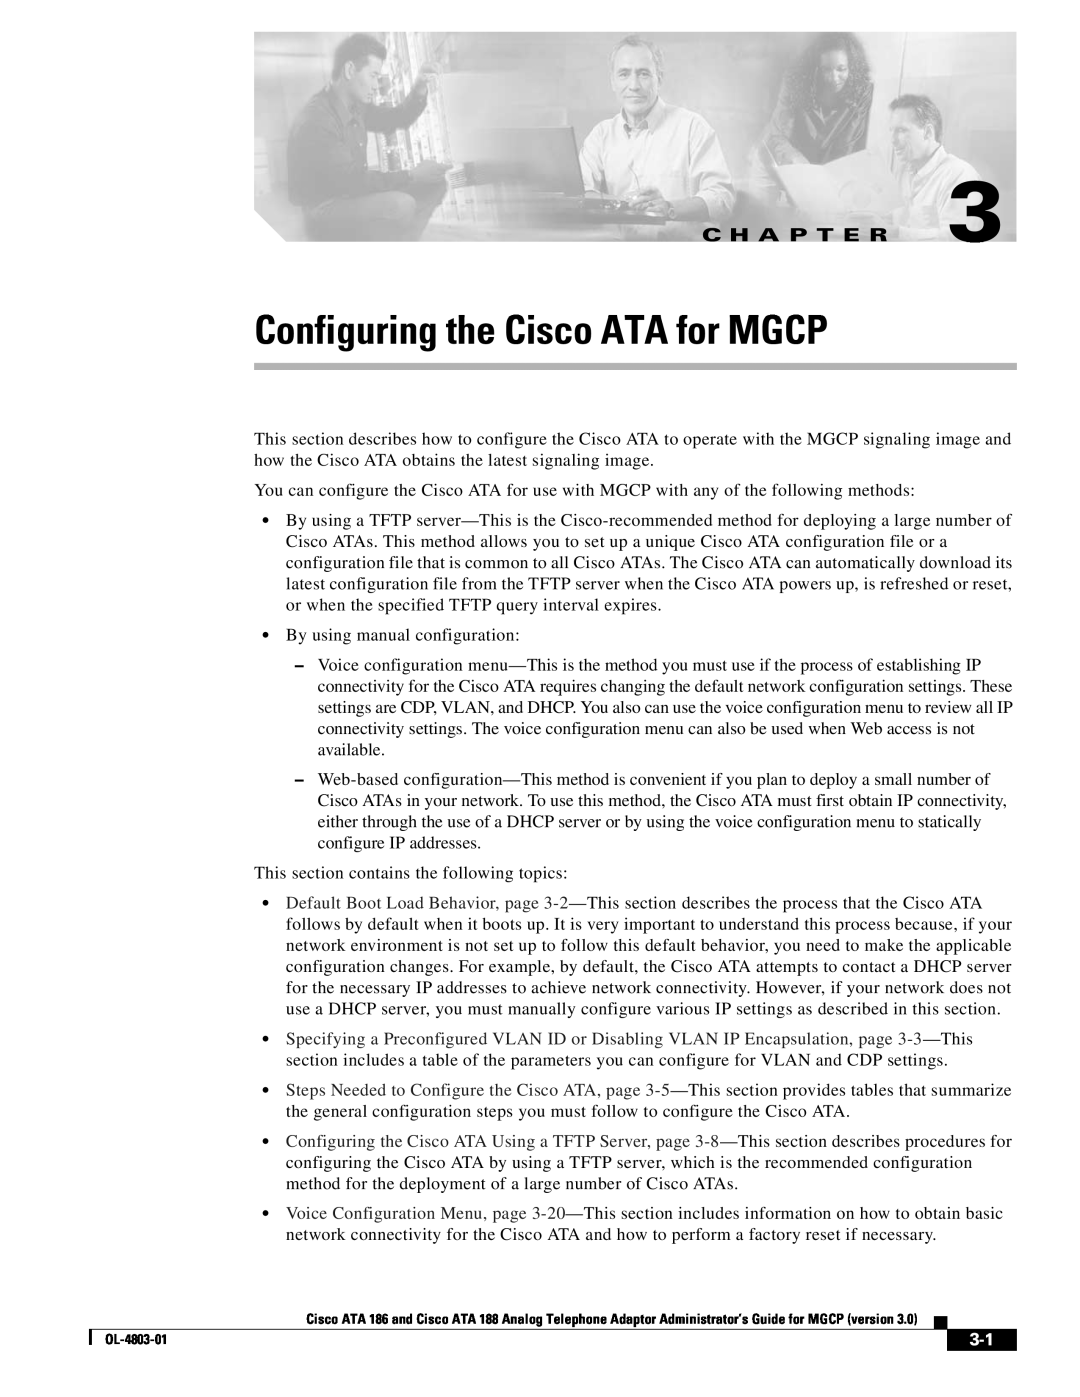 Cisco Systems ATA 188, ATA 186 manual Configuring the Cisco ATA for MGCP, C H A P T E R 